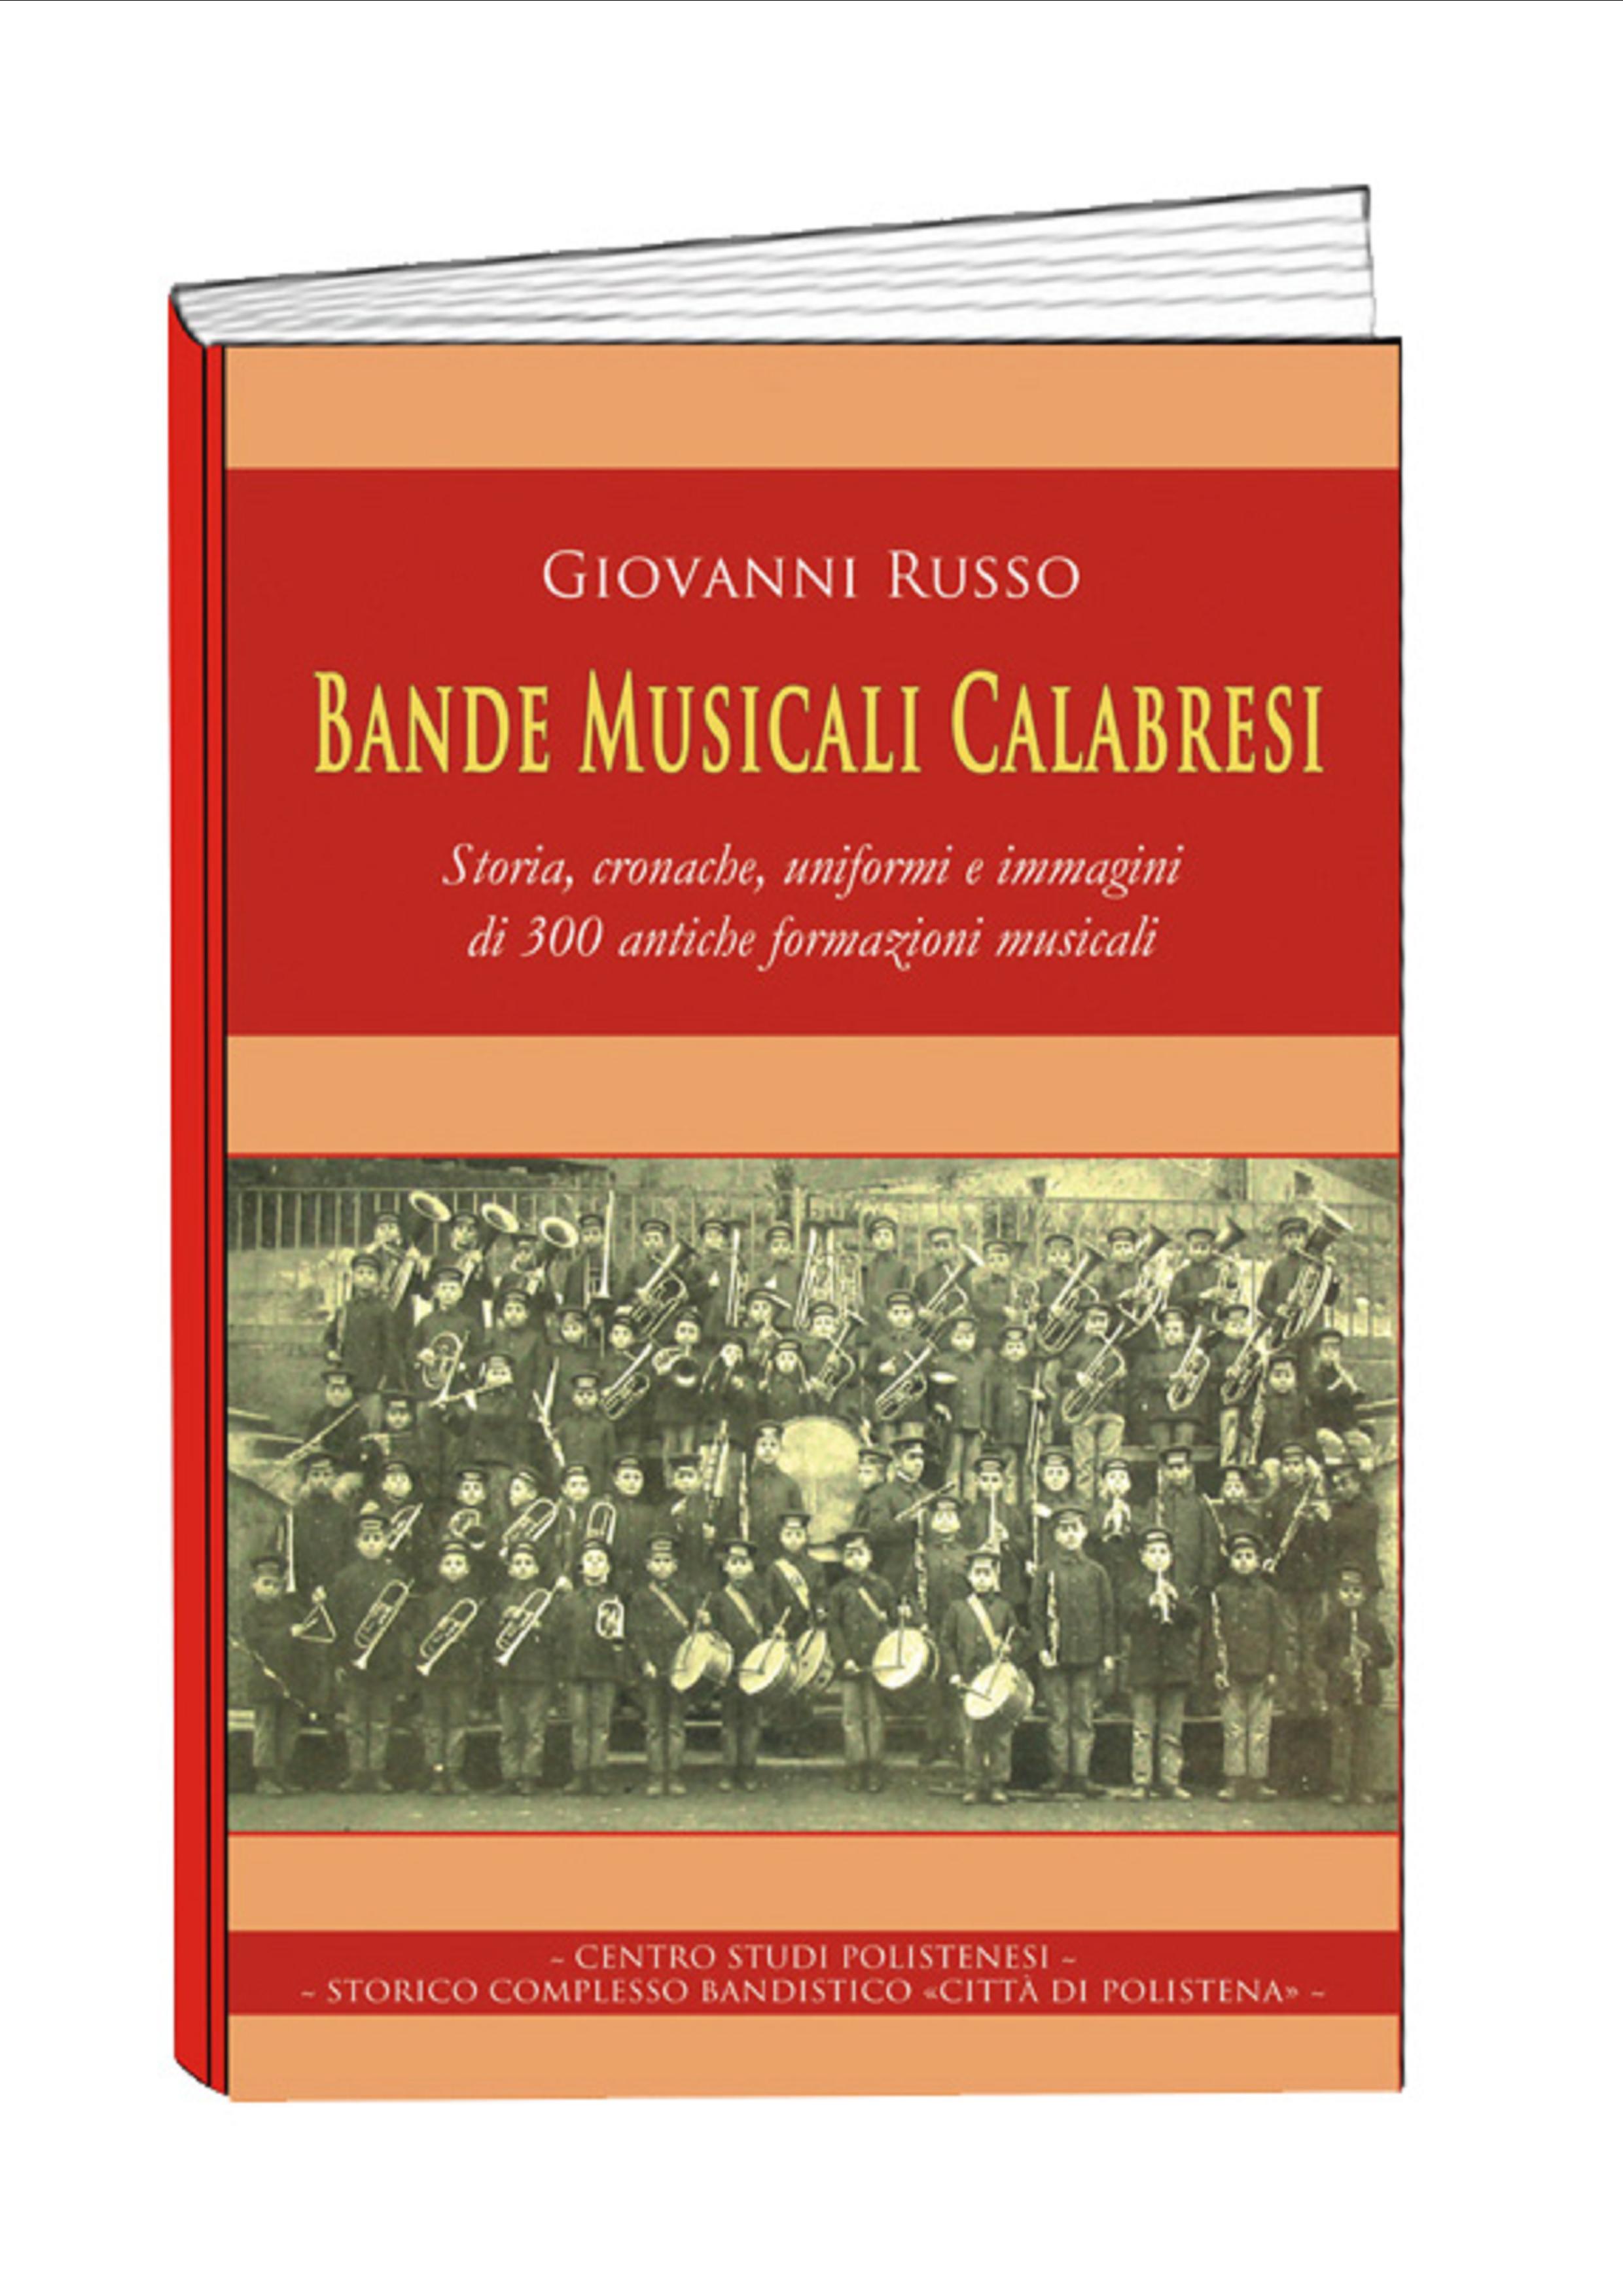 Copertina_Bande Musicali Calabresi_di Giovanni Russo